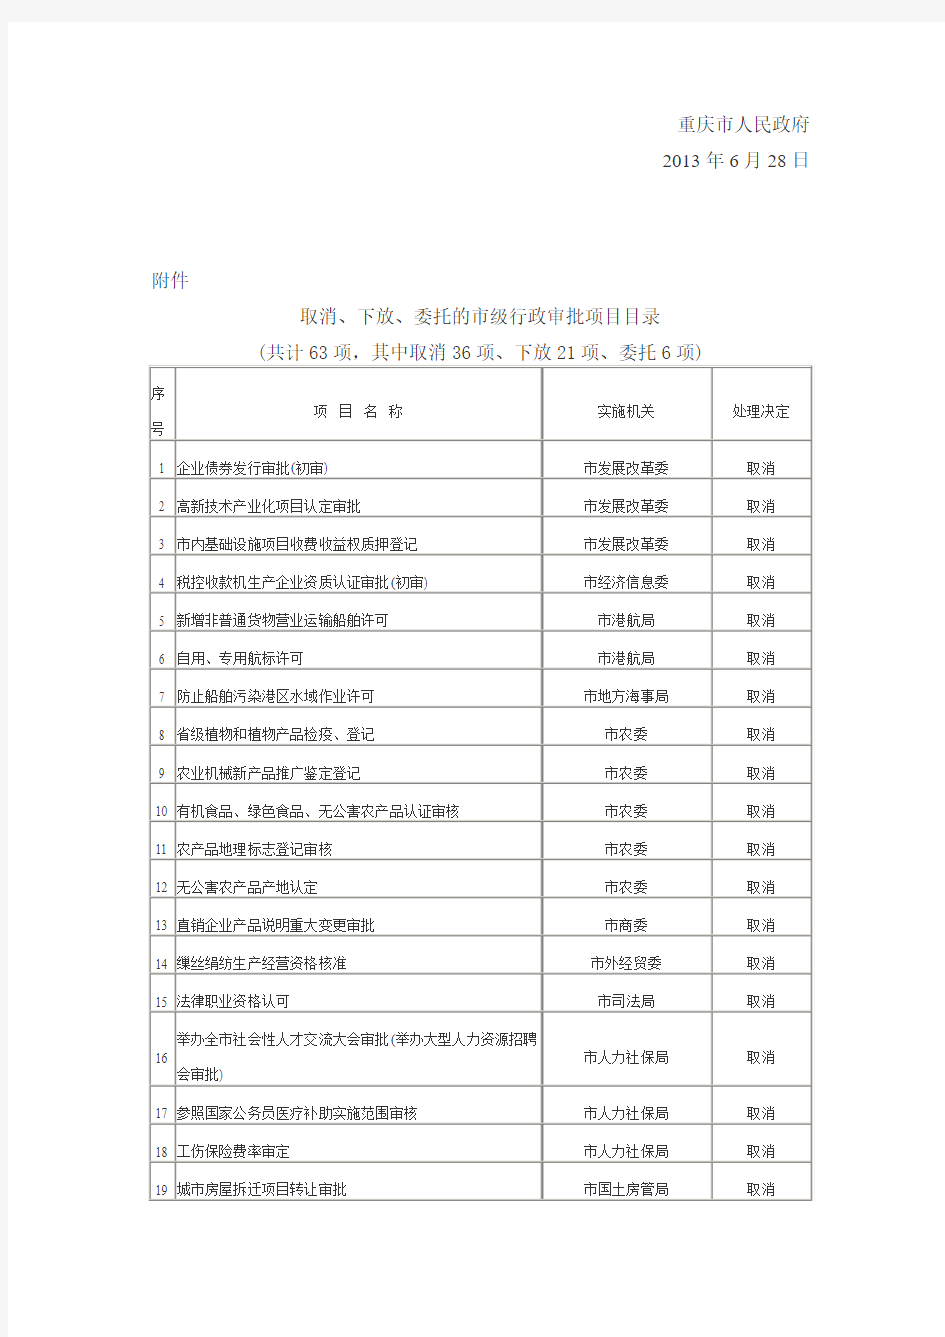 重庆市人民政府关于取消和下放一批行政审批项目等事项的决定 (渝府发〔2013〕50号)